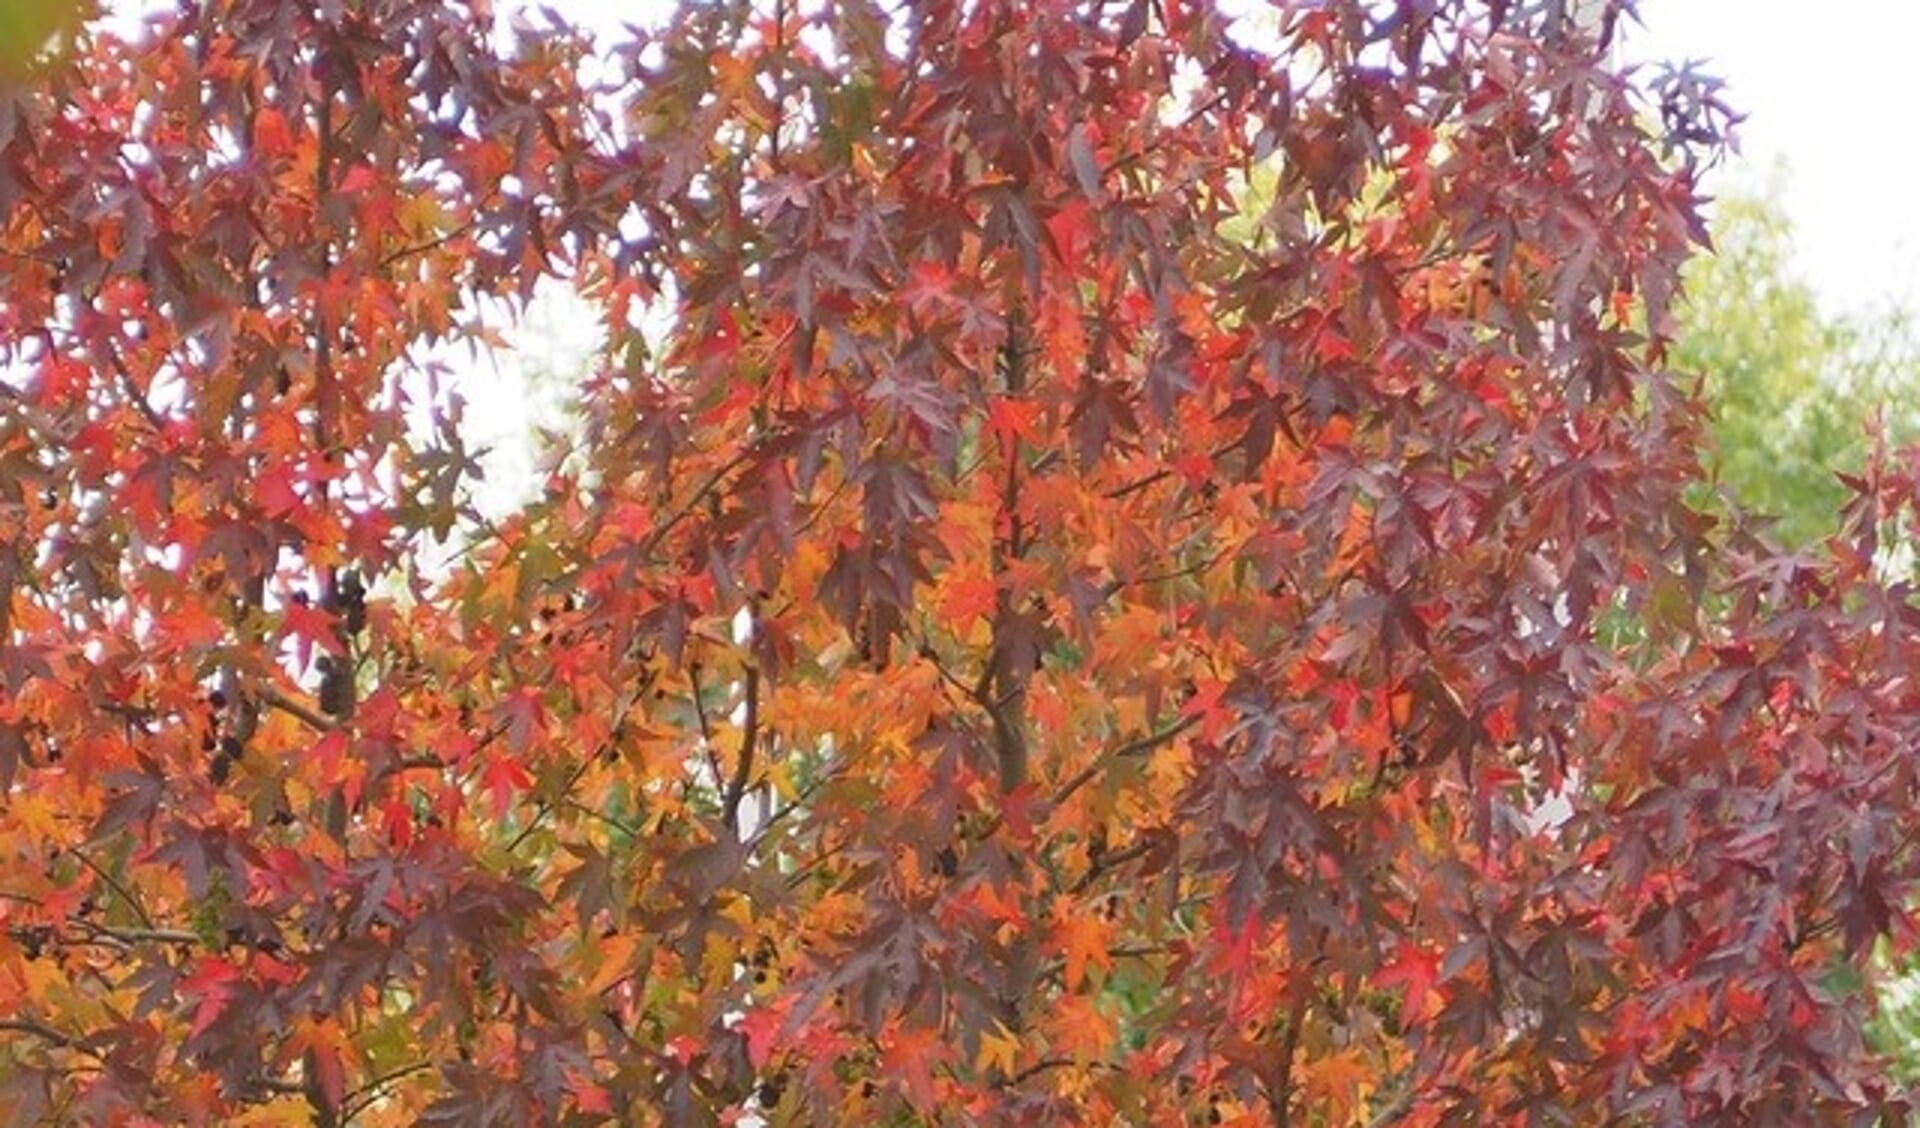 Foto: Joke de RidderBijschrift foto : De amberboom krijgt prachtig rood blad in de herfst. Foto: Joke de Ridder.